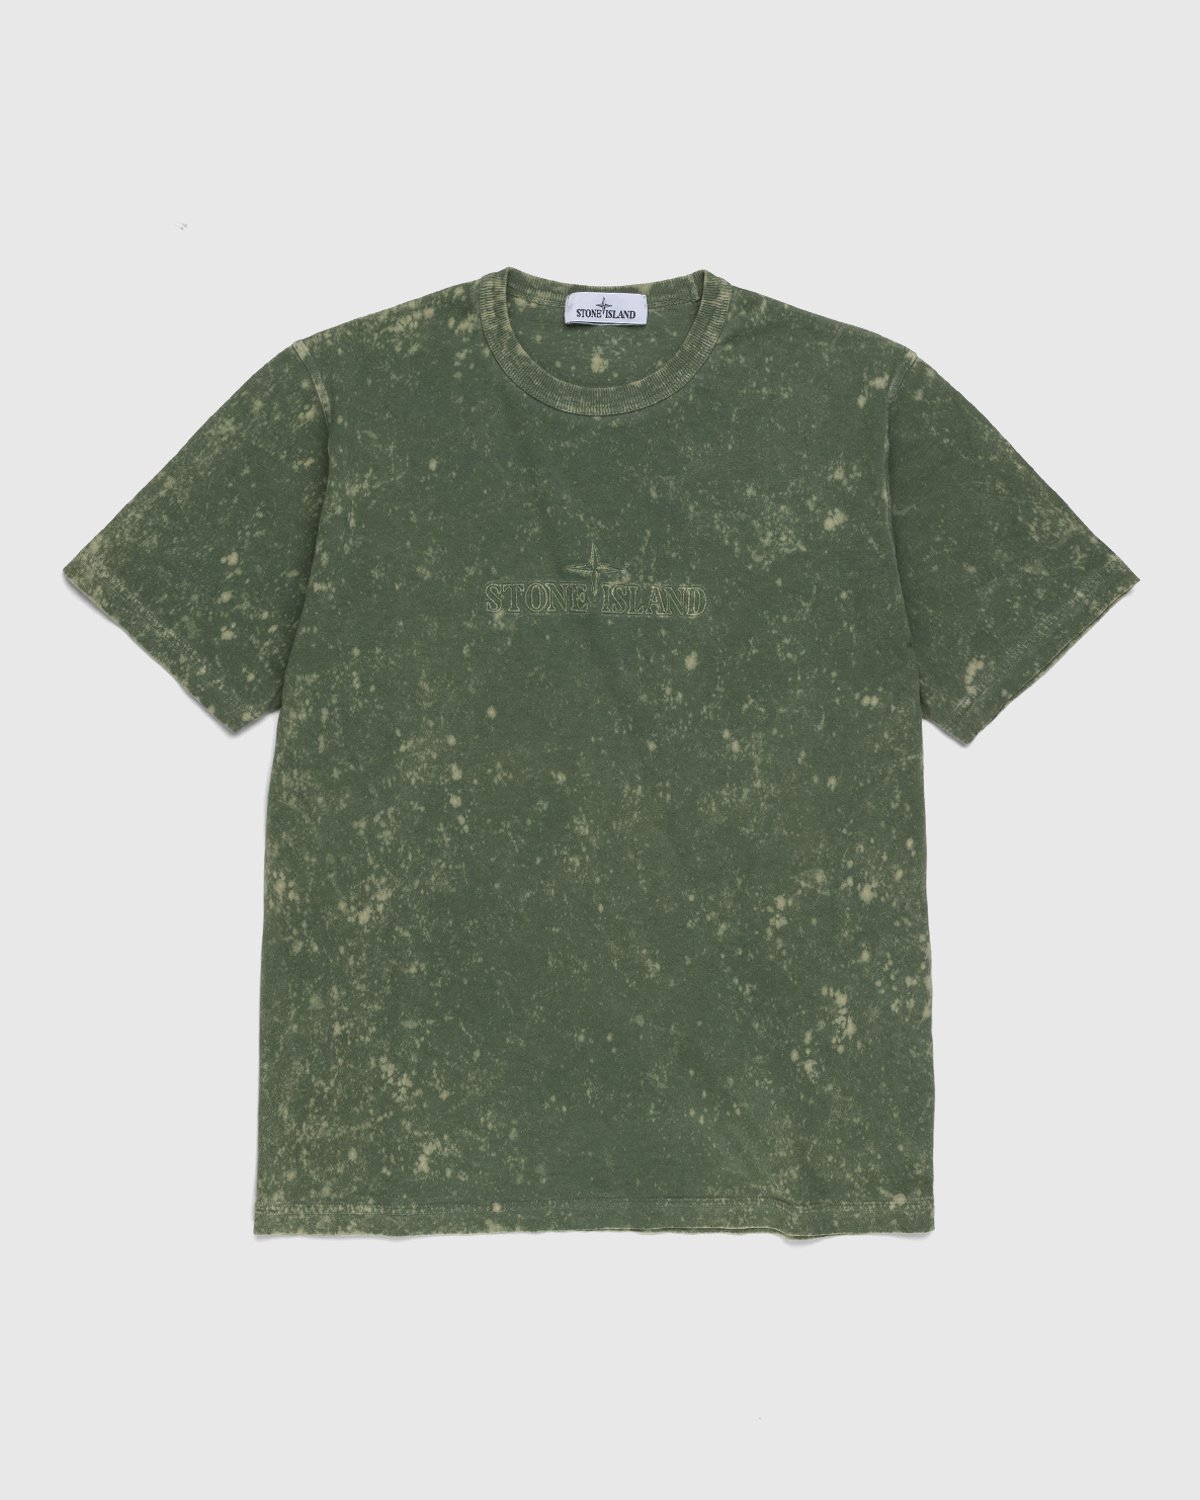 Stone Island - 20945 Off-Dye T-Shirt Olive - Clothing - Green - Image 1